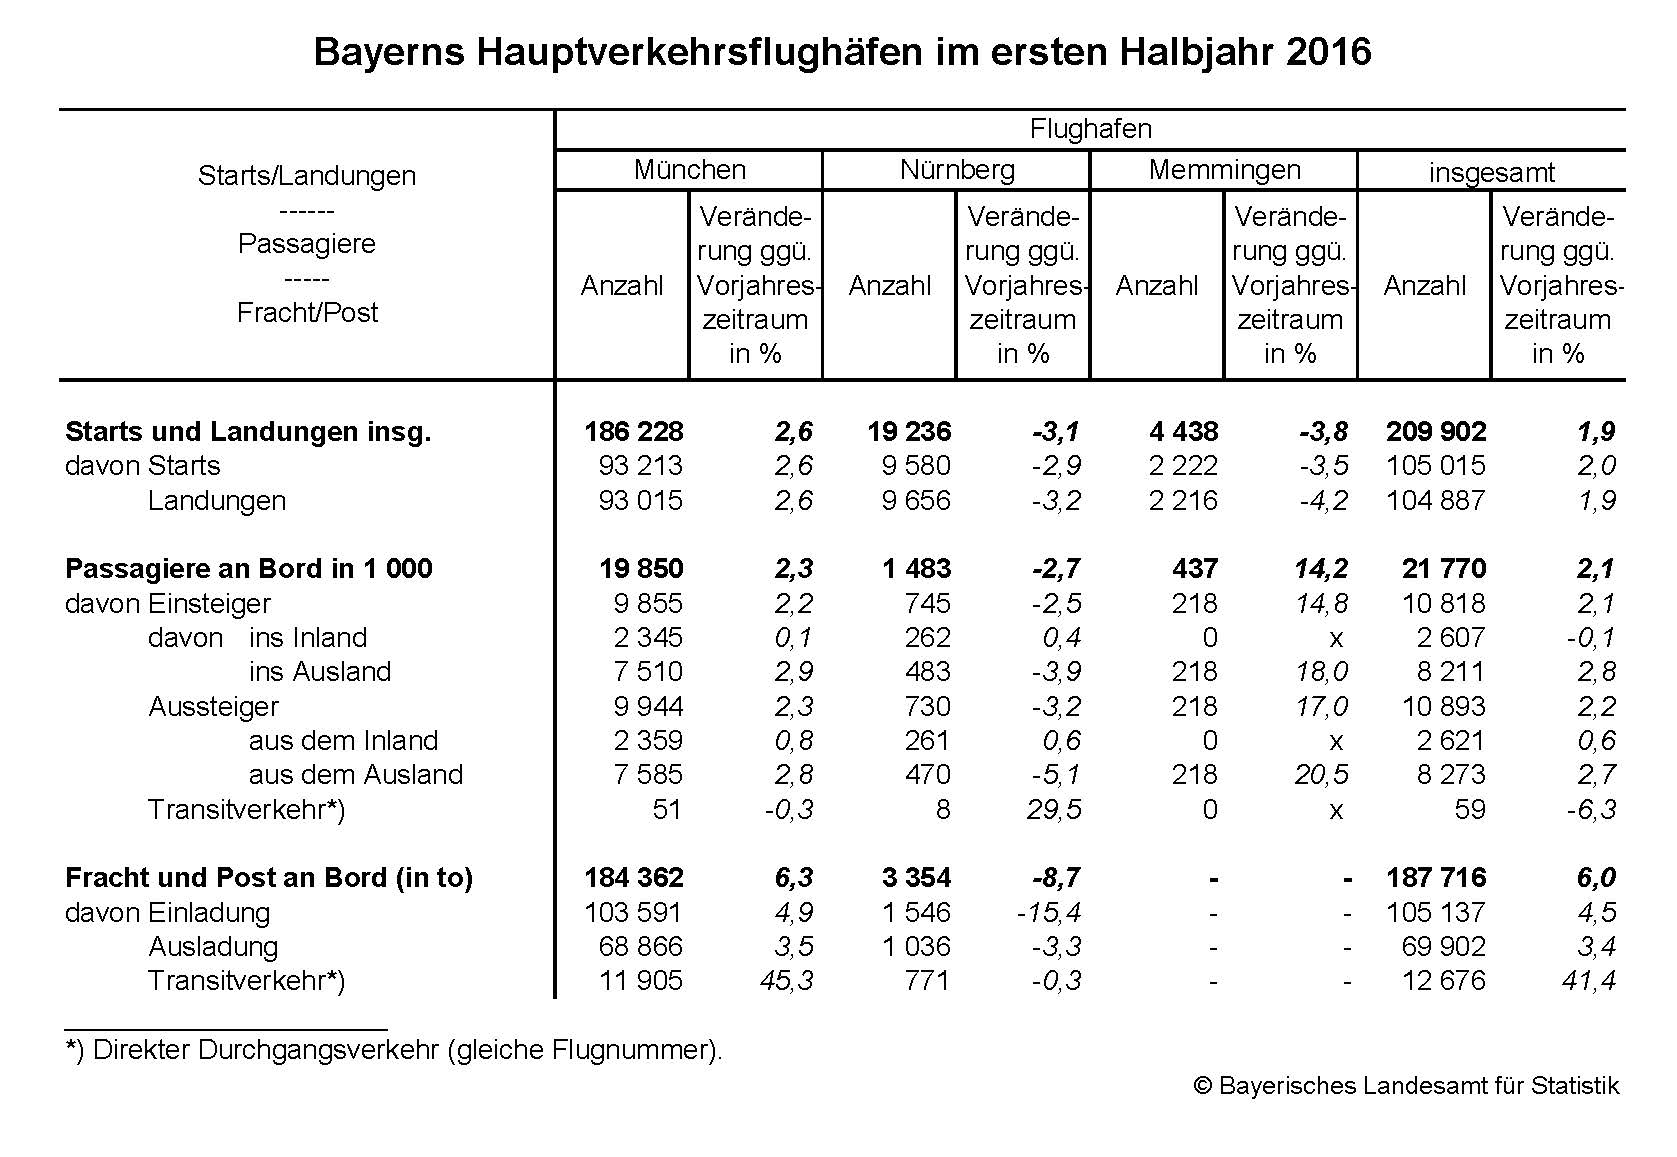 Bayerns Hauptverkehrsflughäfen im ersten Halbjahr 2016